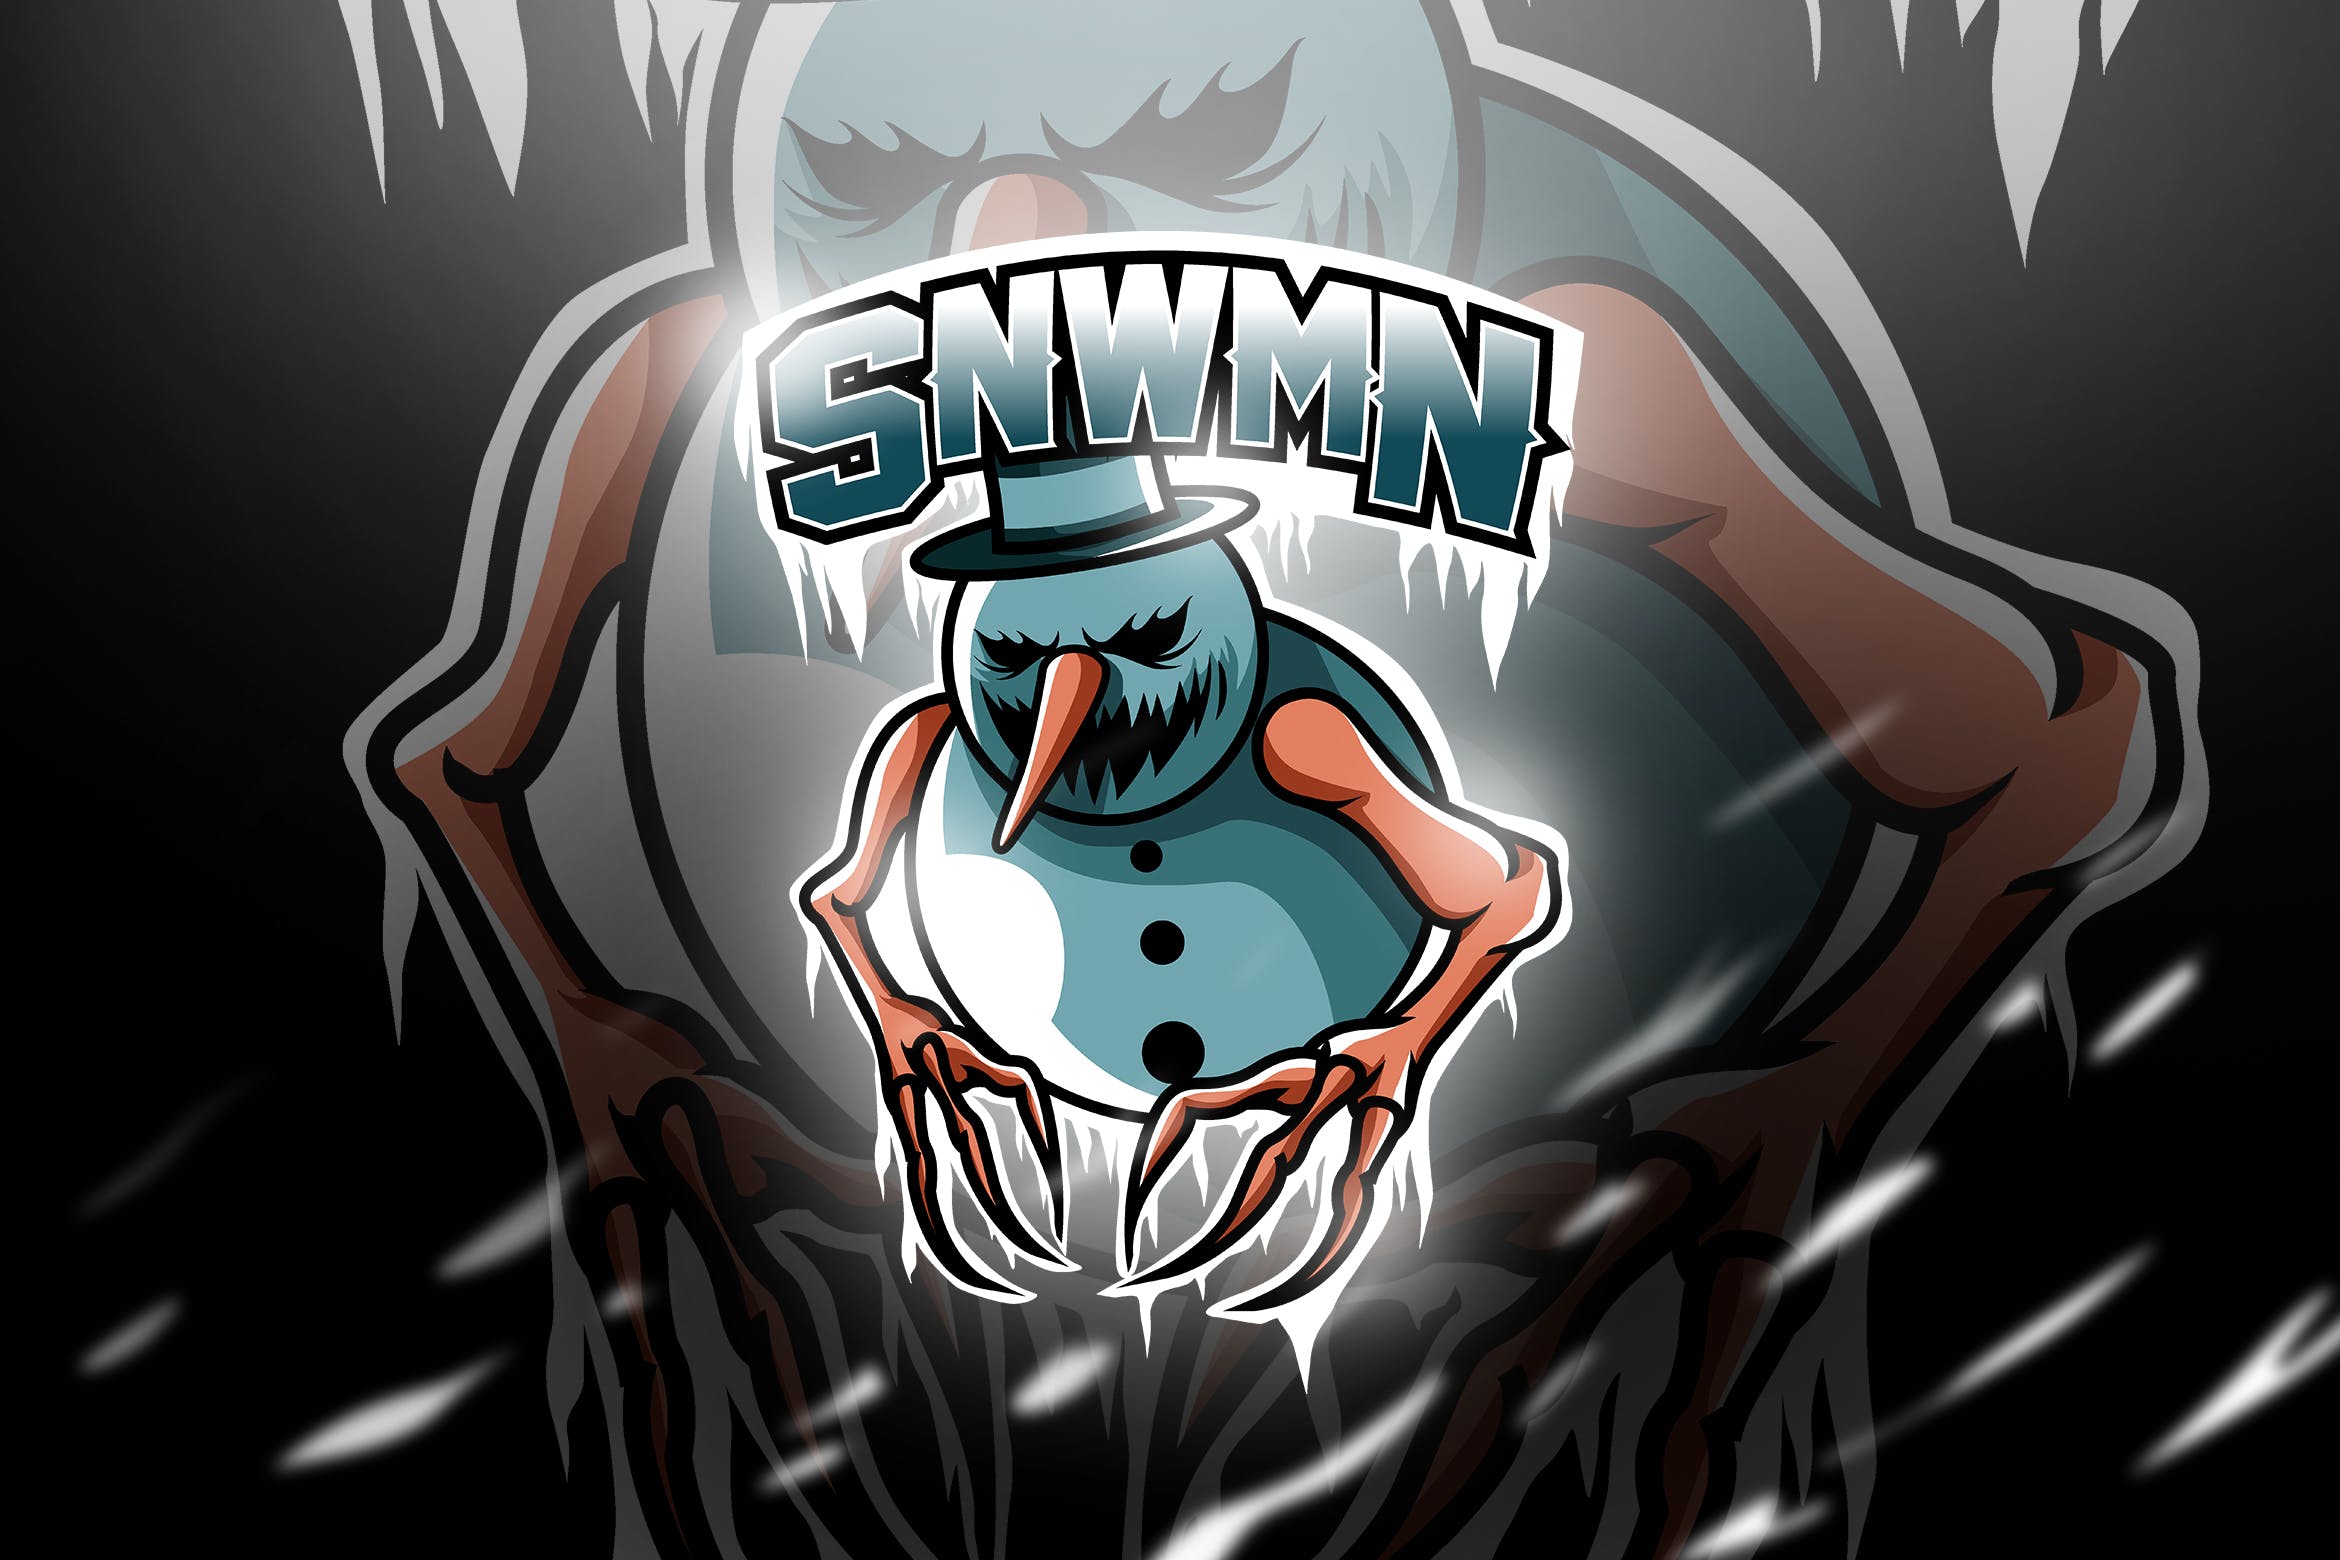 雪人恶魔形象电竞游戏俱乐部队徽Logo模板 SNWMN – Mascot & Esport Logo插图